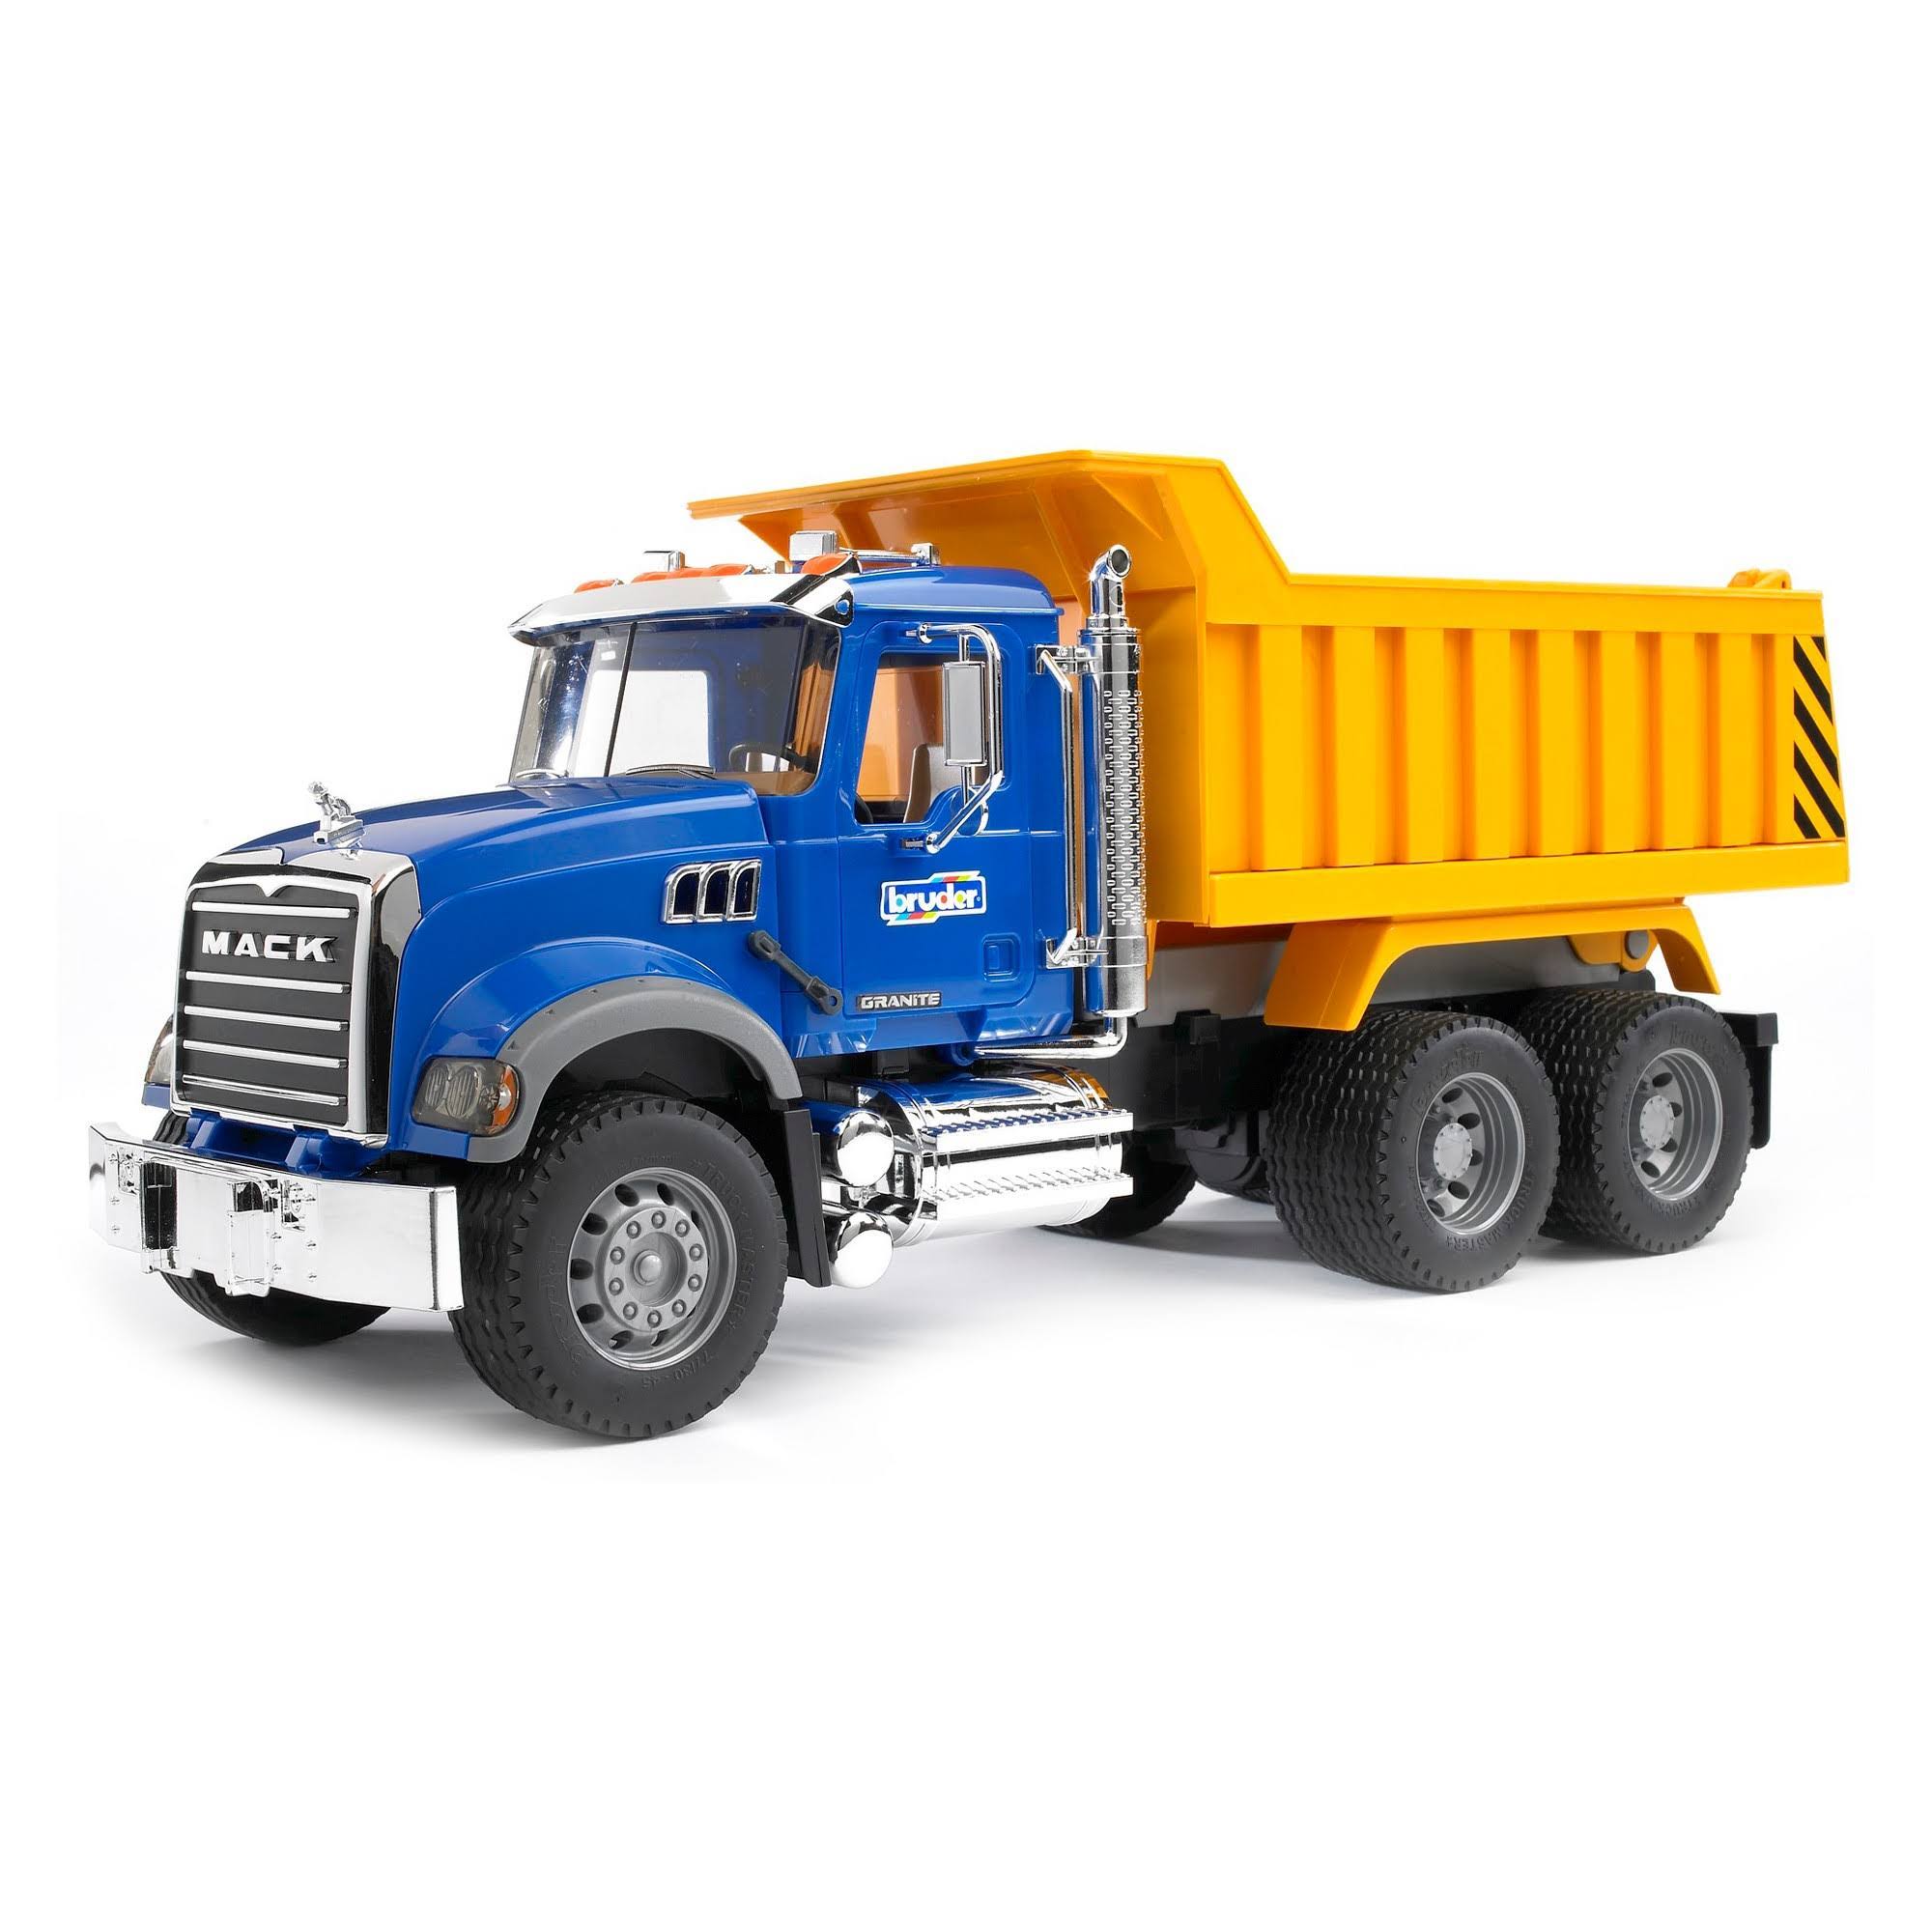 Bruder Toys Mack Granite Dump Truck Model Toy